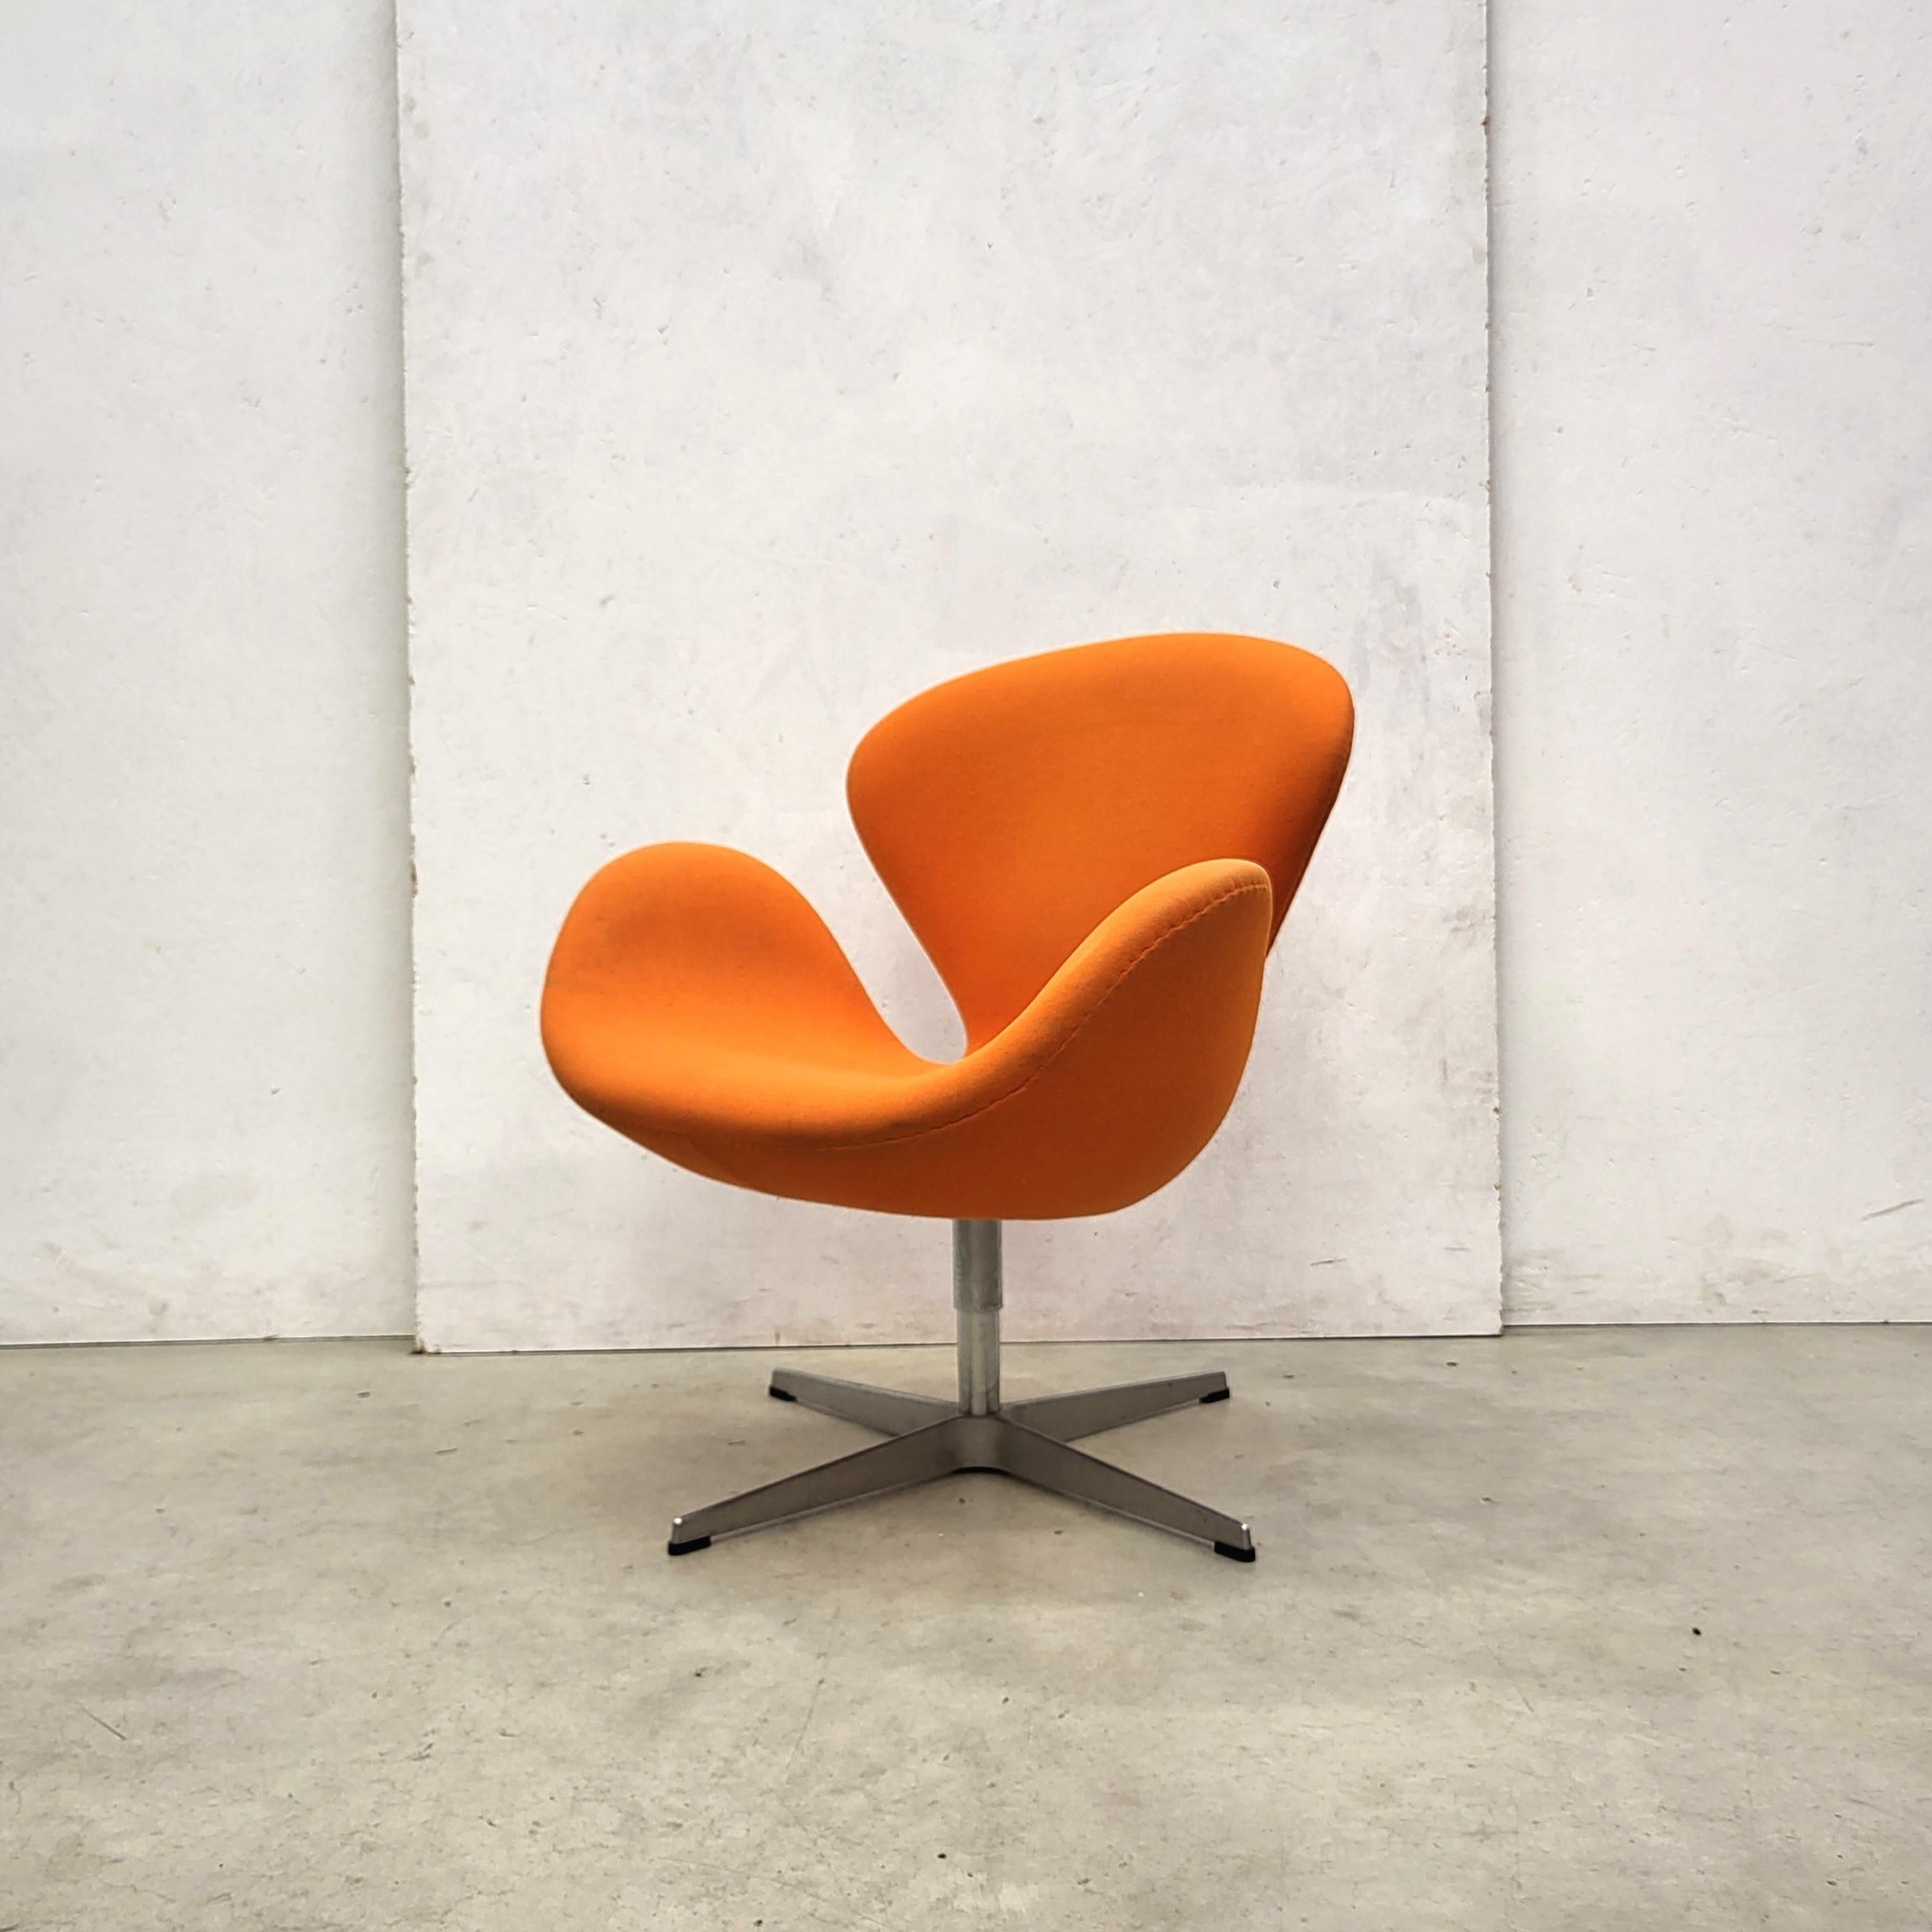 Danish Pair Swan Chair by Arne Jacobsen for Fritz Hansen 2006 Model